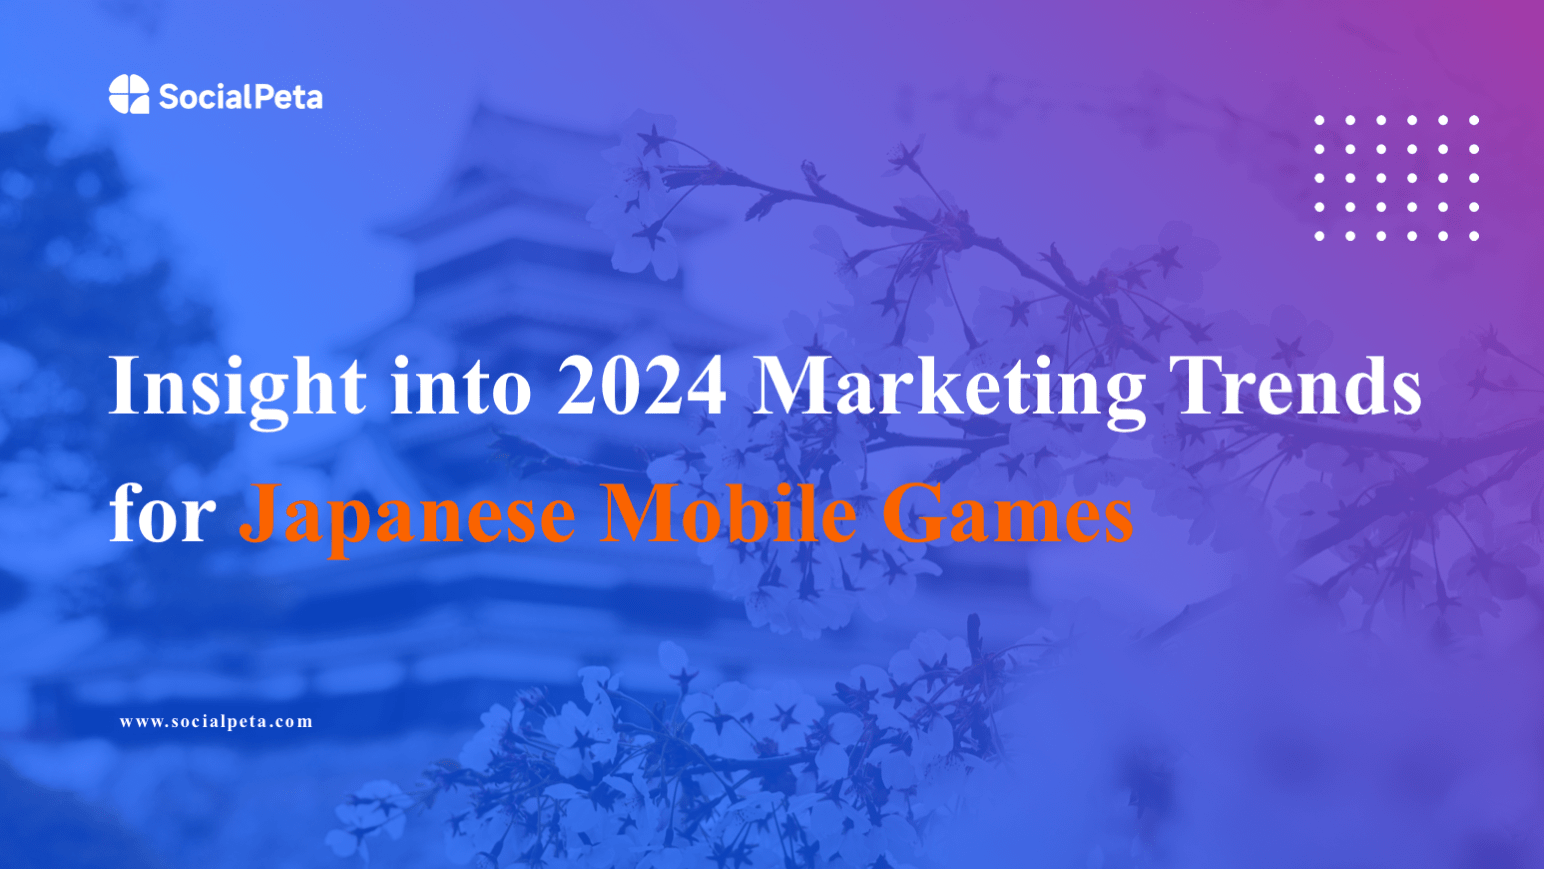 Xu hướng marketing game Nhật Bản hiện nay ra sao?